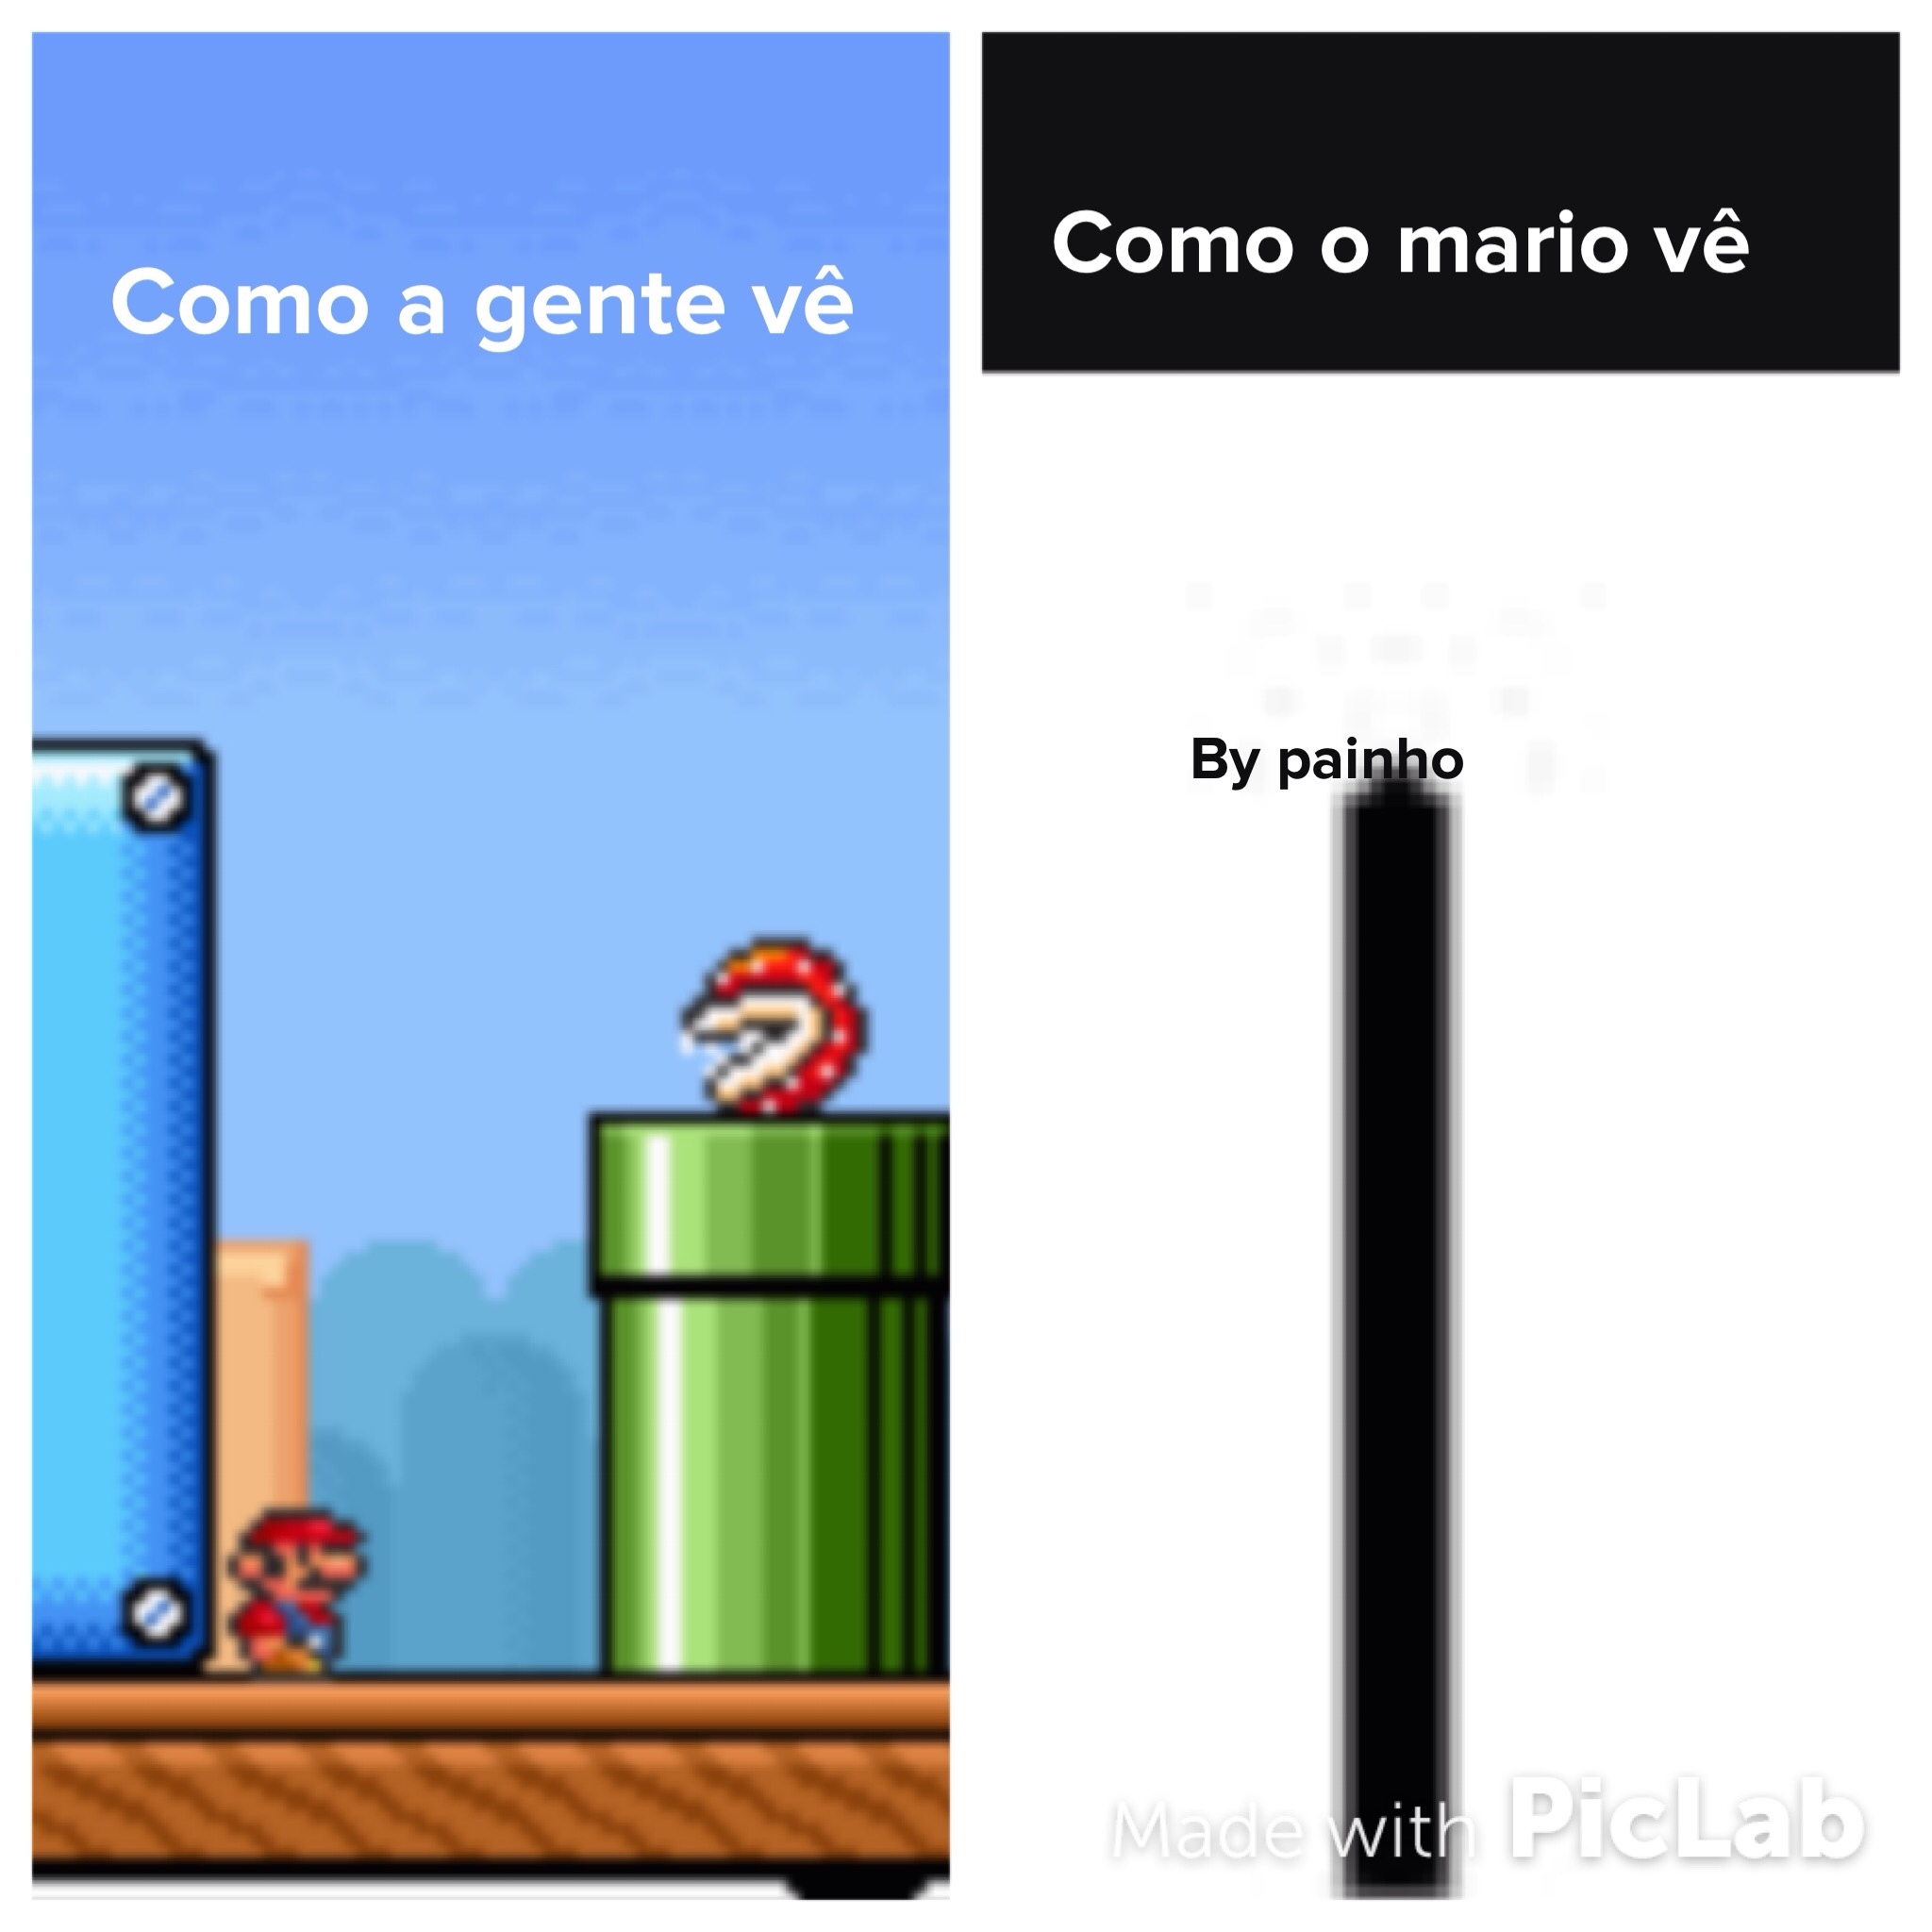 hehe Mario time - meme